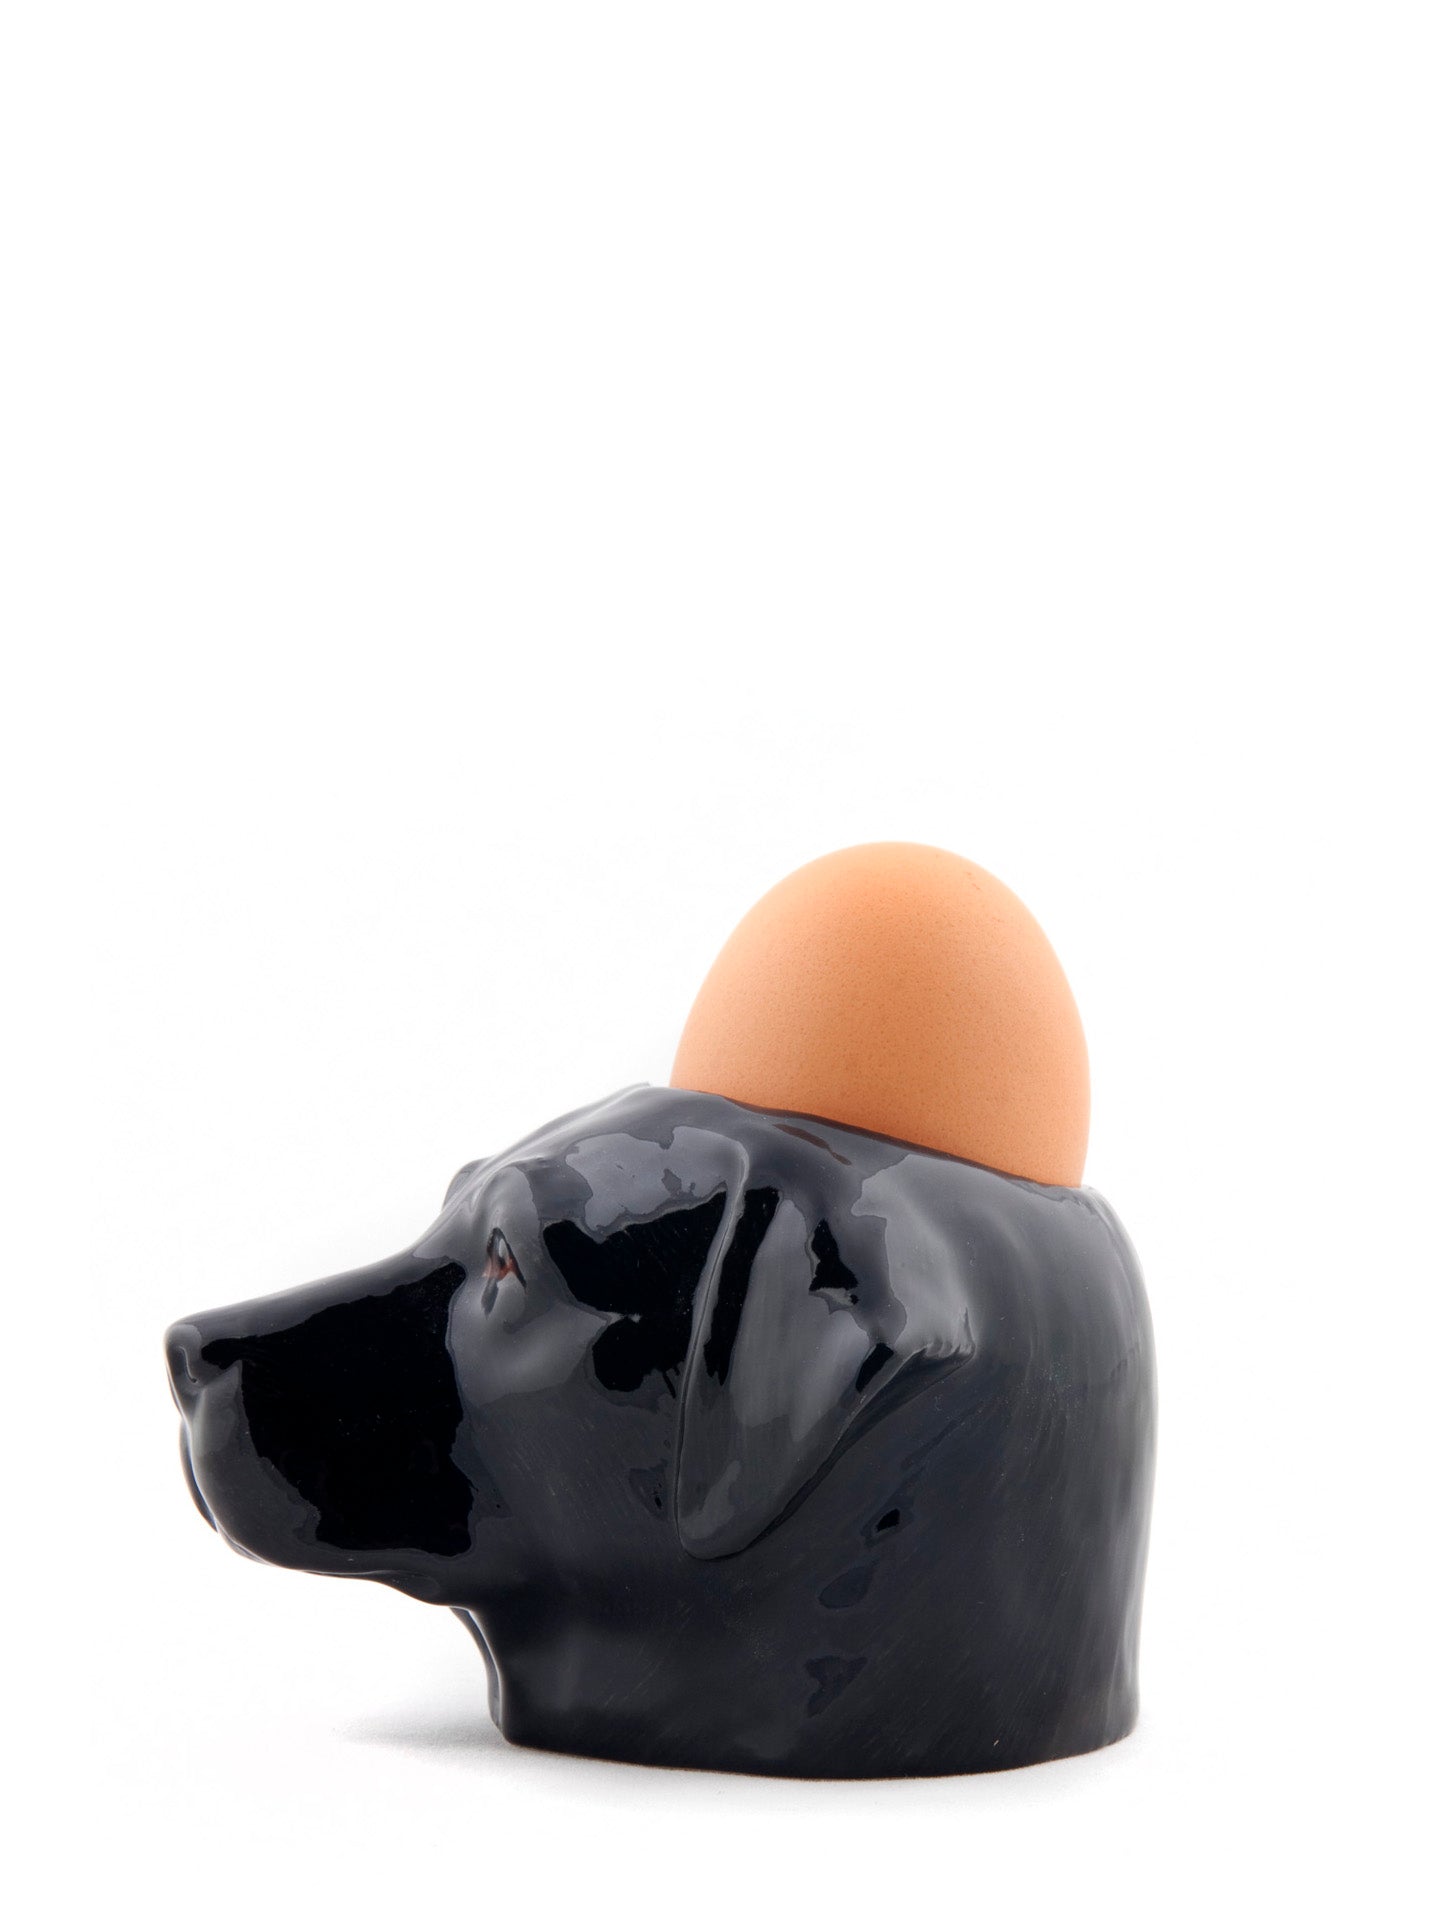 Black Labrador Egg Cup